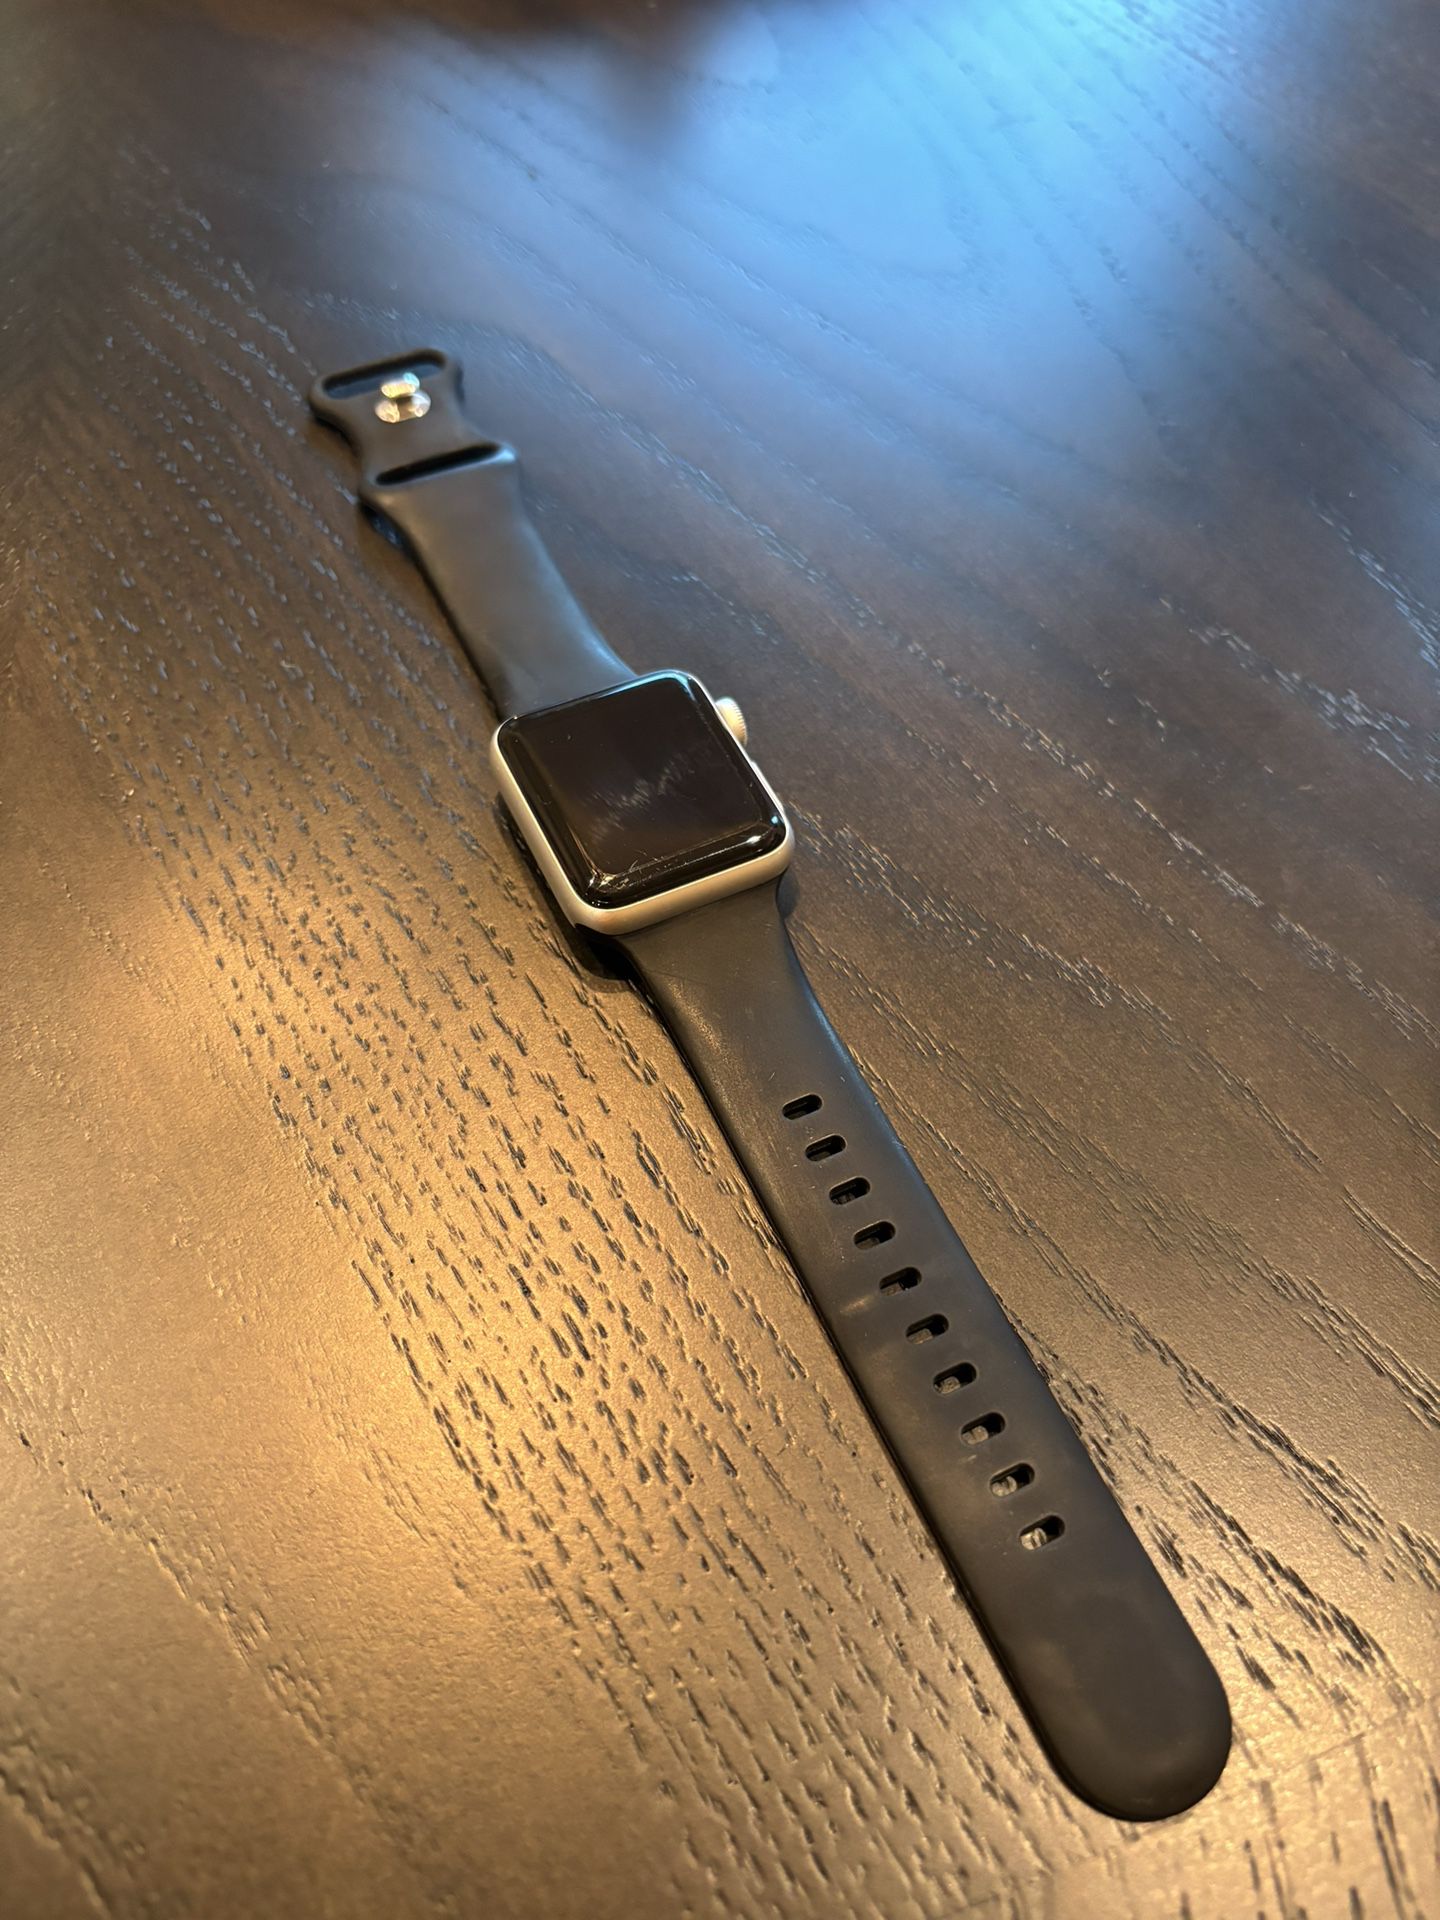 Apple Watch Gen 3